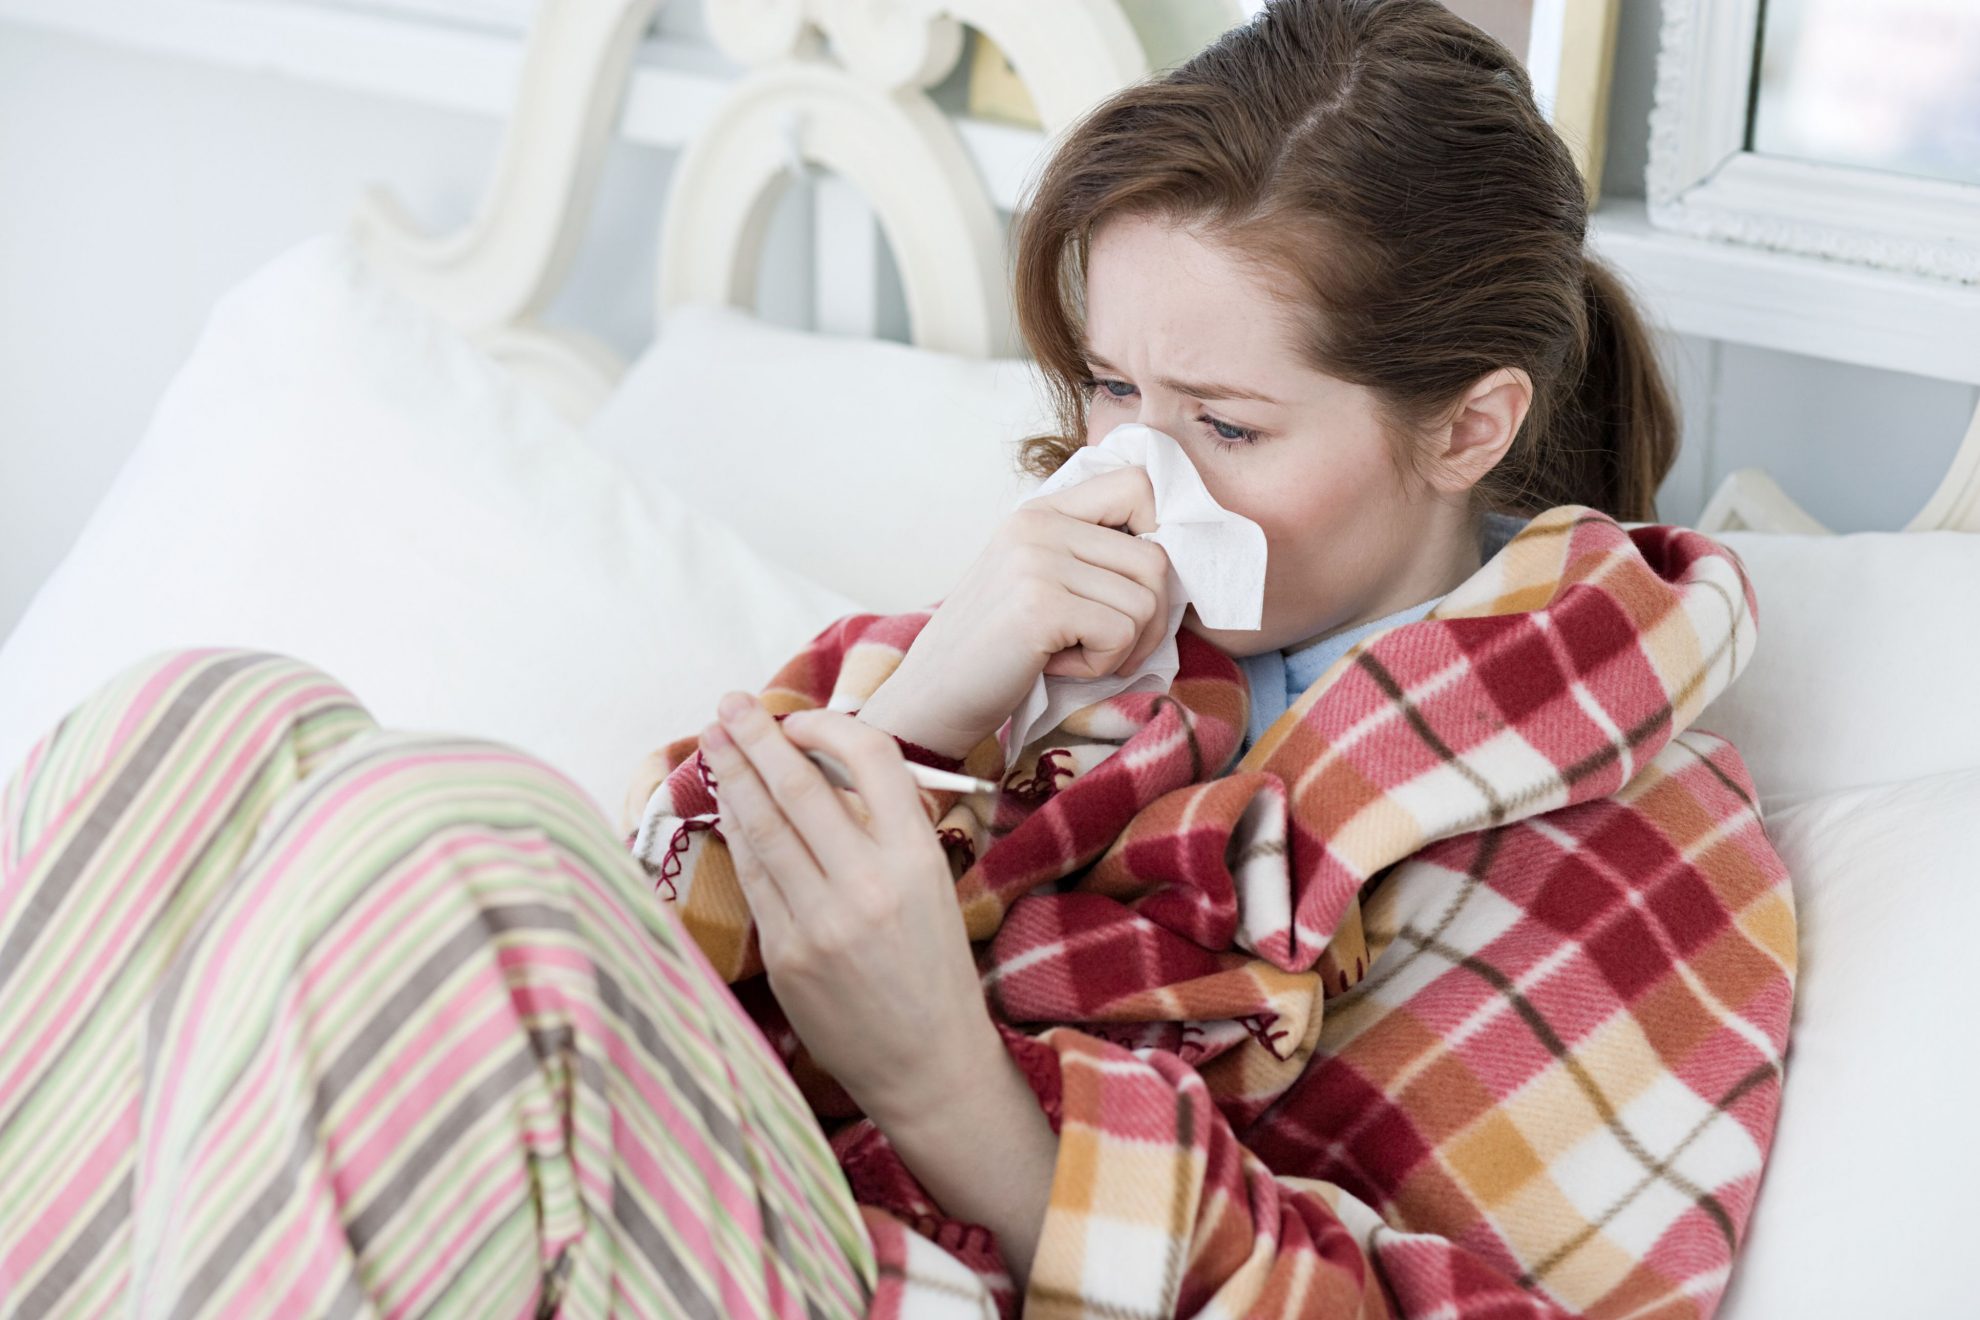 Nacionalinio visuomenės sveikatos centro (NVSC) Panevėžio departamentas informuoja, kad sergamumas gripu ir ūminėmis viršutinių kvėpavimo takų infekcijomis (ŪVKTI) spalio 7-13 dienomis išaugo.